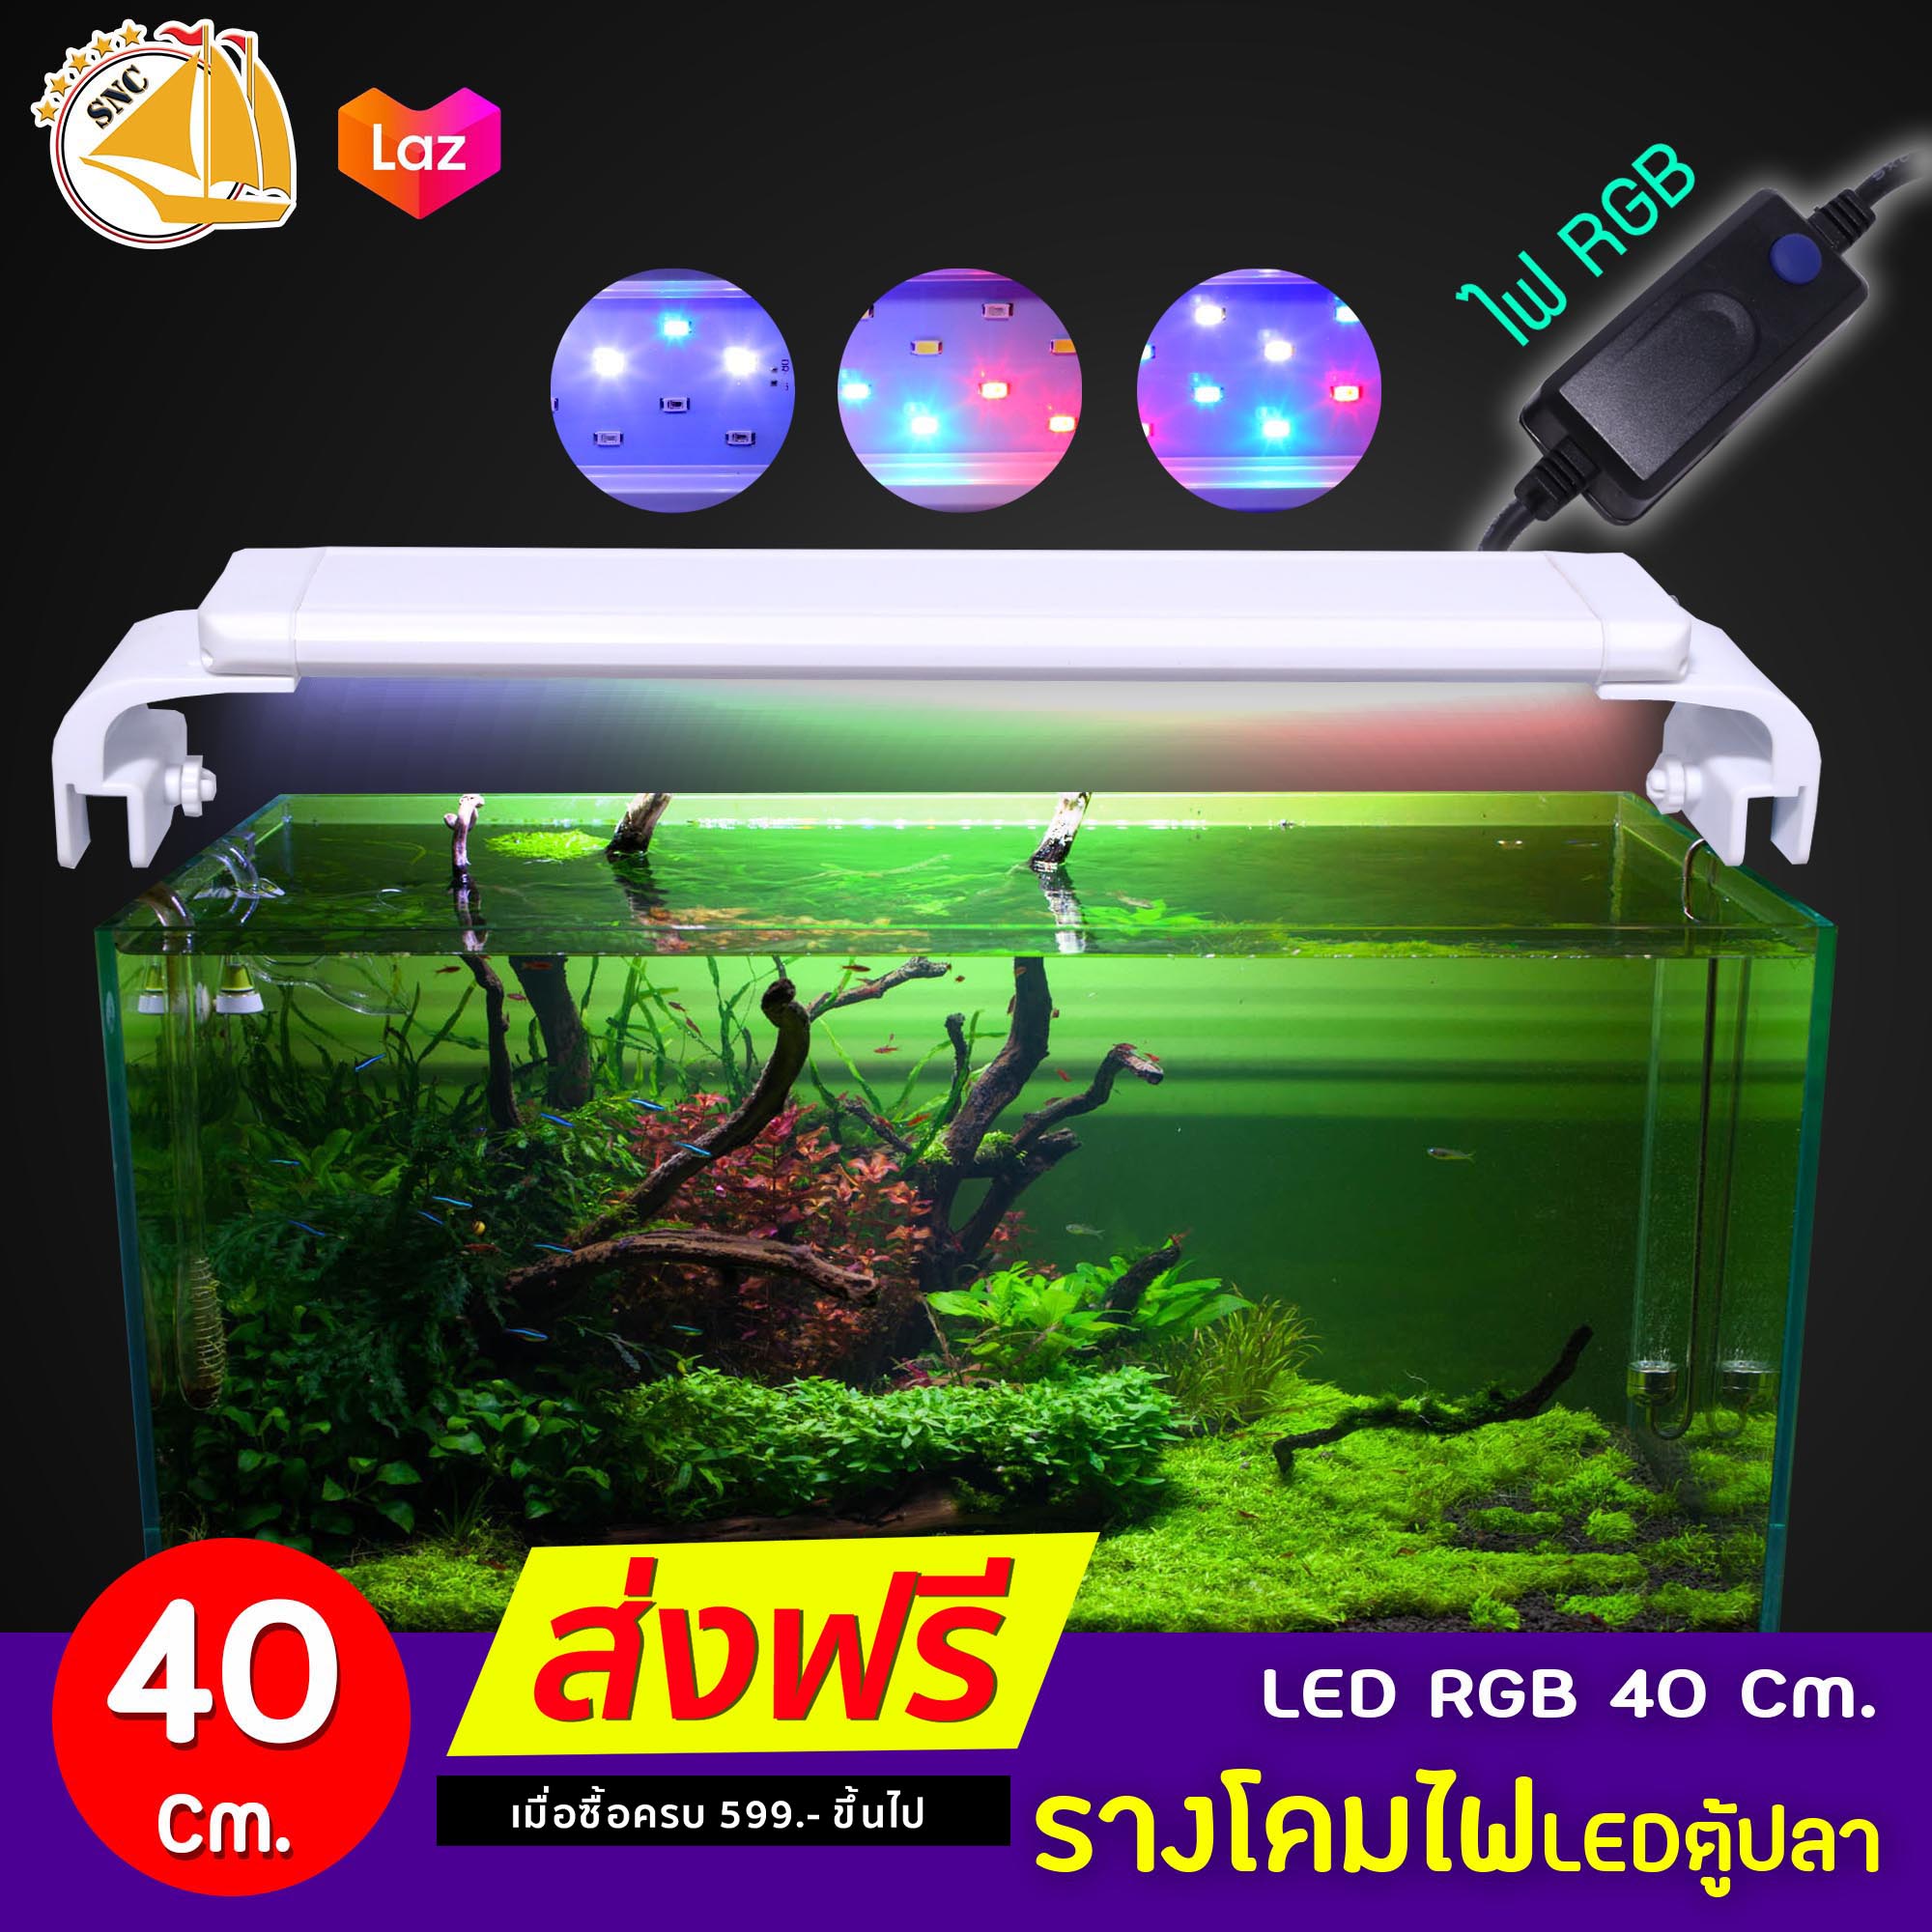 LED-40 Cm.โคมไฟสำหรับตู้ปลา ตู้ไม้น้ำ ไฟ LED RGB Q-400 เหมาะกับตู้ 40 ซม. หรือ16 นิ้ว